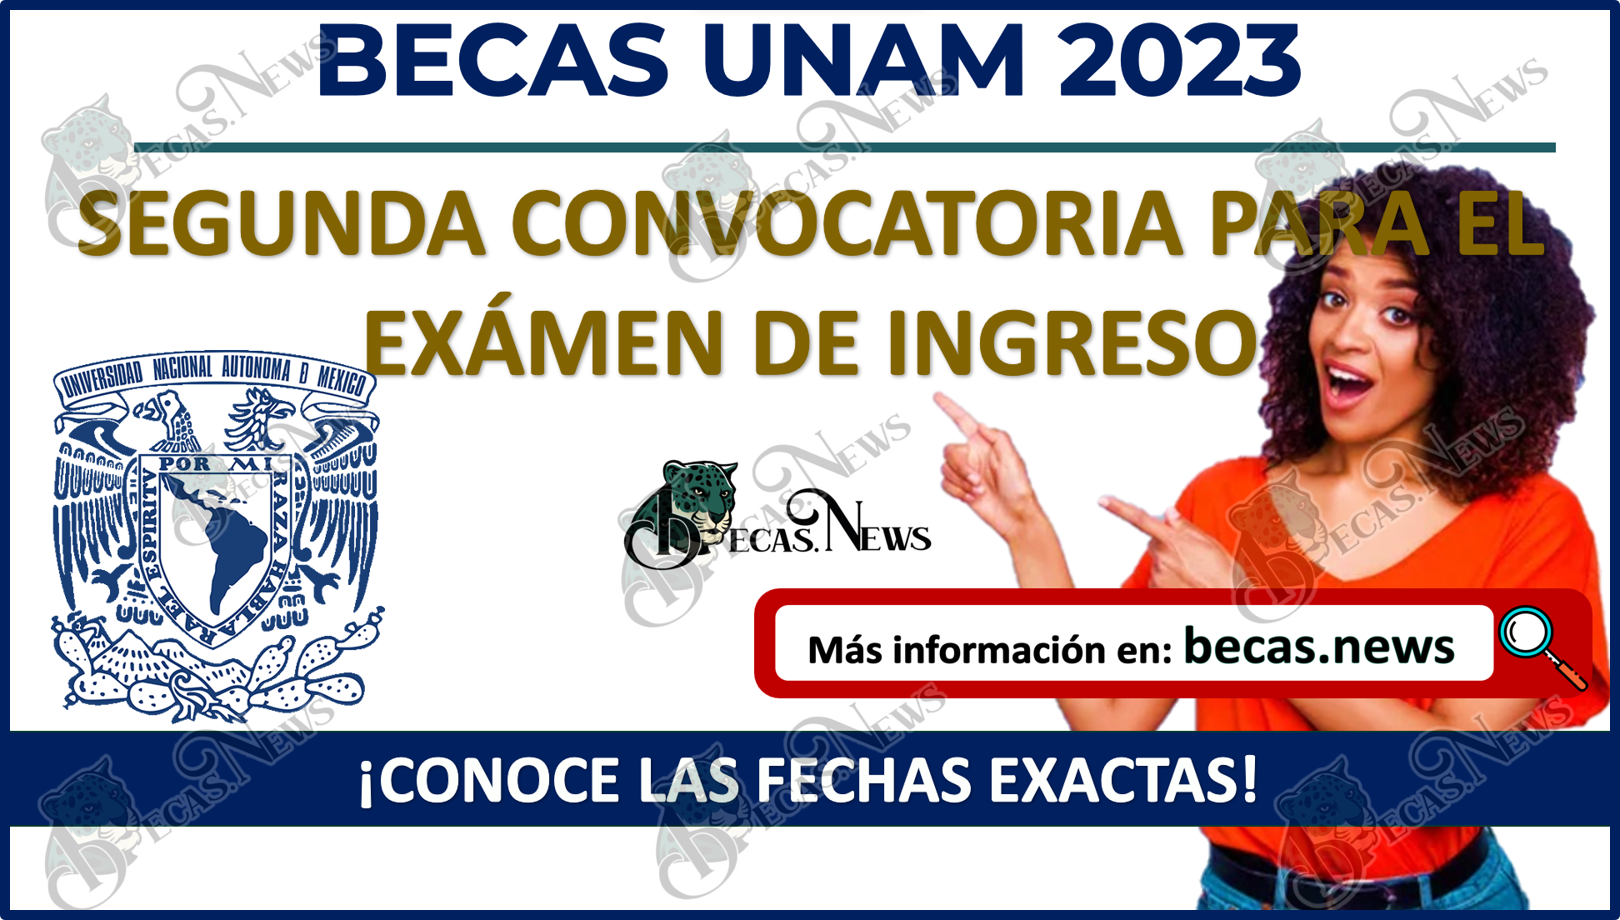 Becas UNAM 2023 | Esta es la FECHA de la Convocatoria para el examen de ingreso